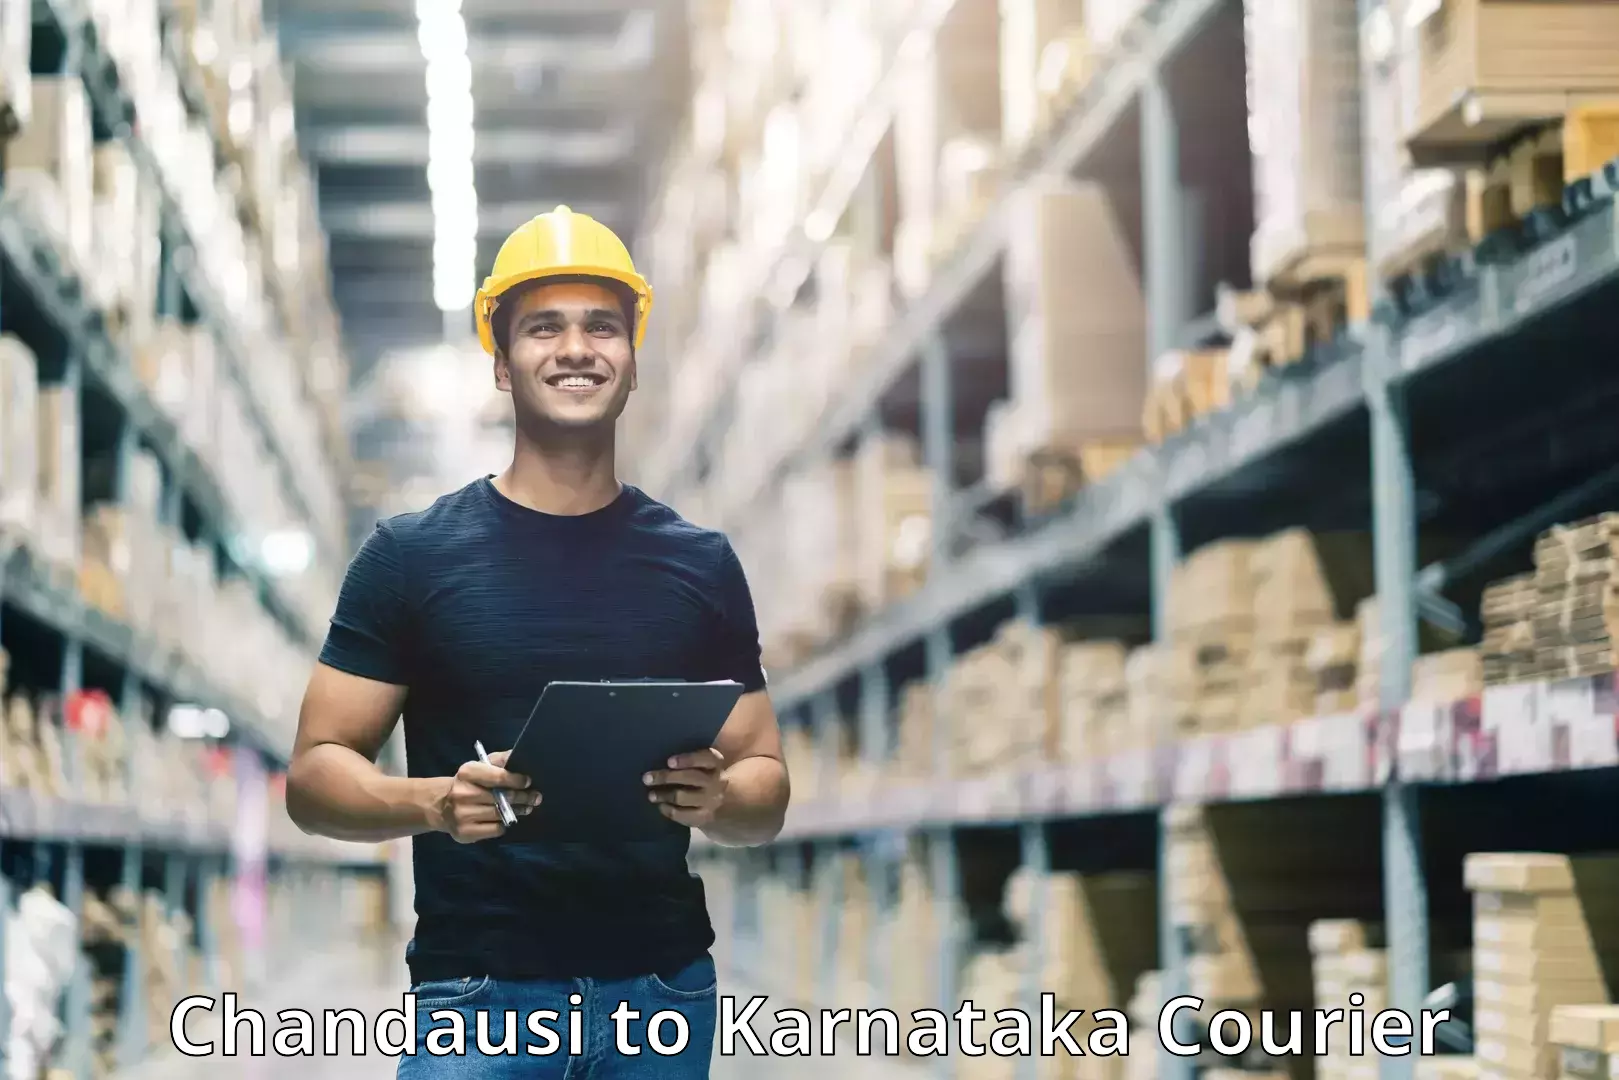 Nationwide shipping capabilities Chandausi to Karnataka